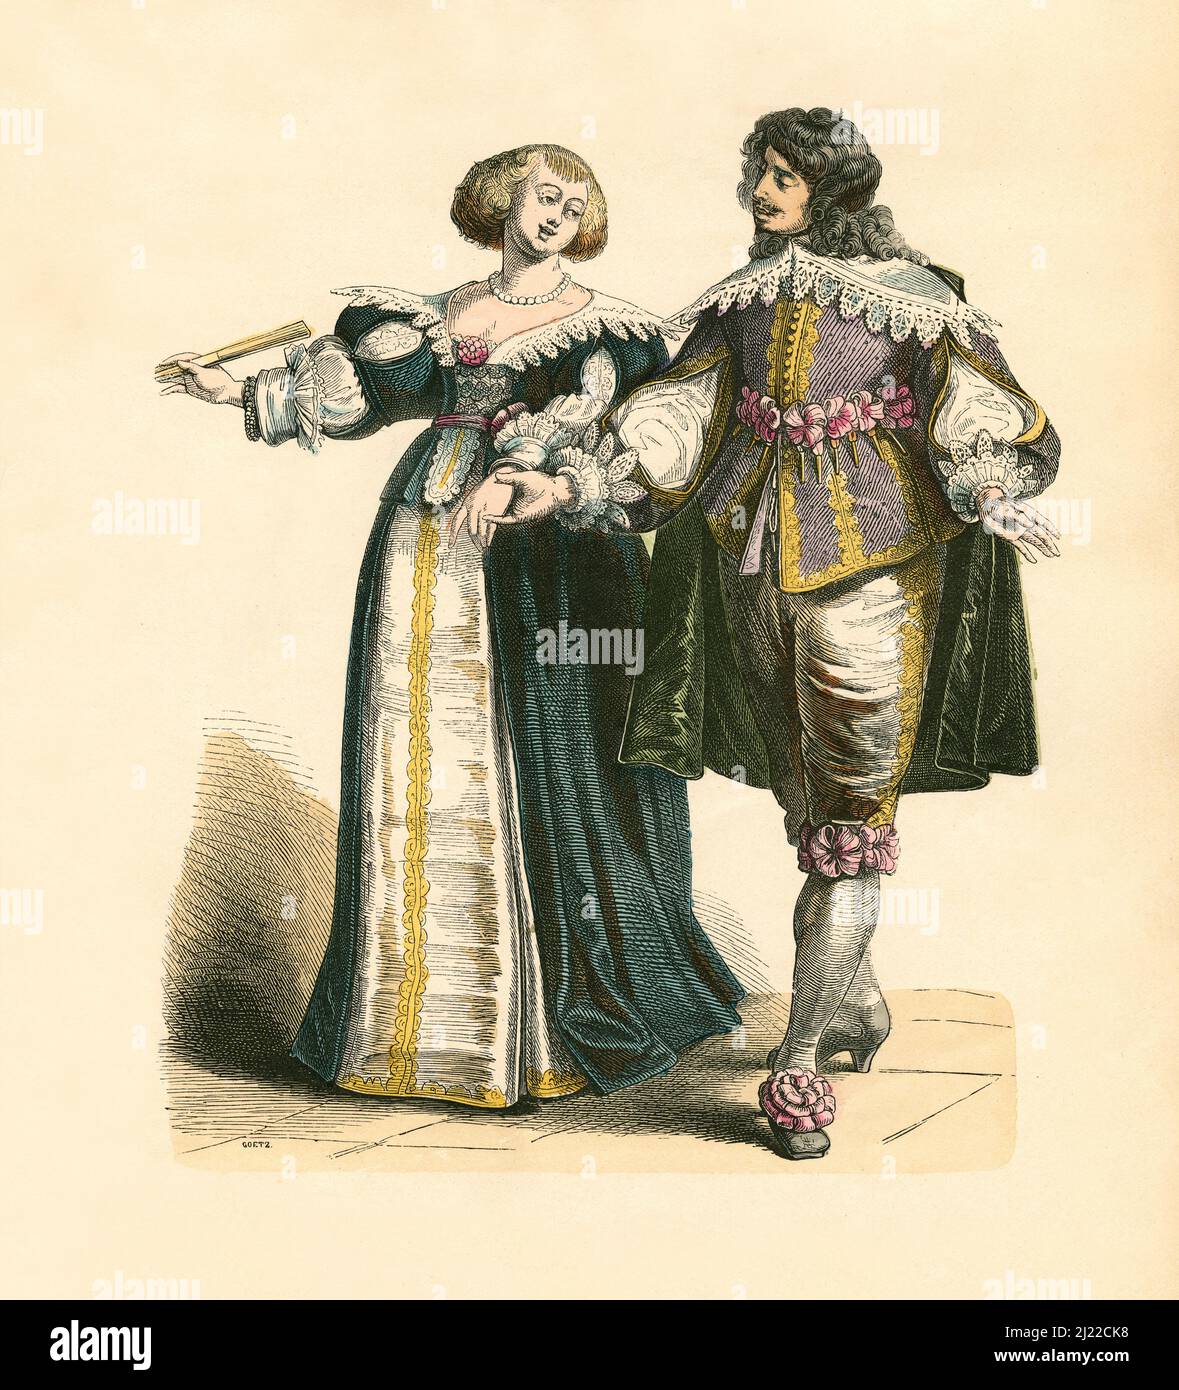 Francese Noble Coppia, secondo terzo del 17th secolo, Illustrazione, la Storia del Costume, Braun & Schneider, Monaco, Germania, 1861-1880 Foto Stock